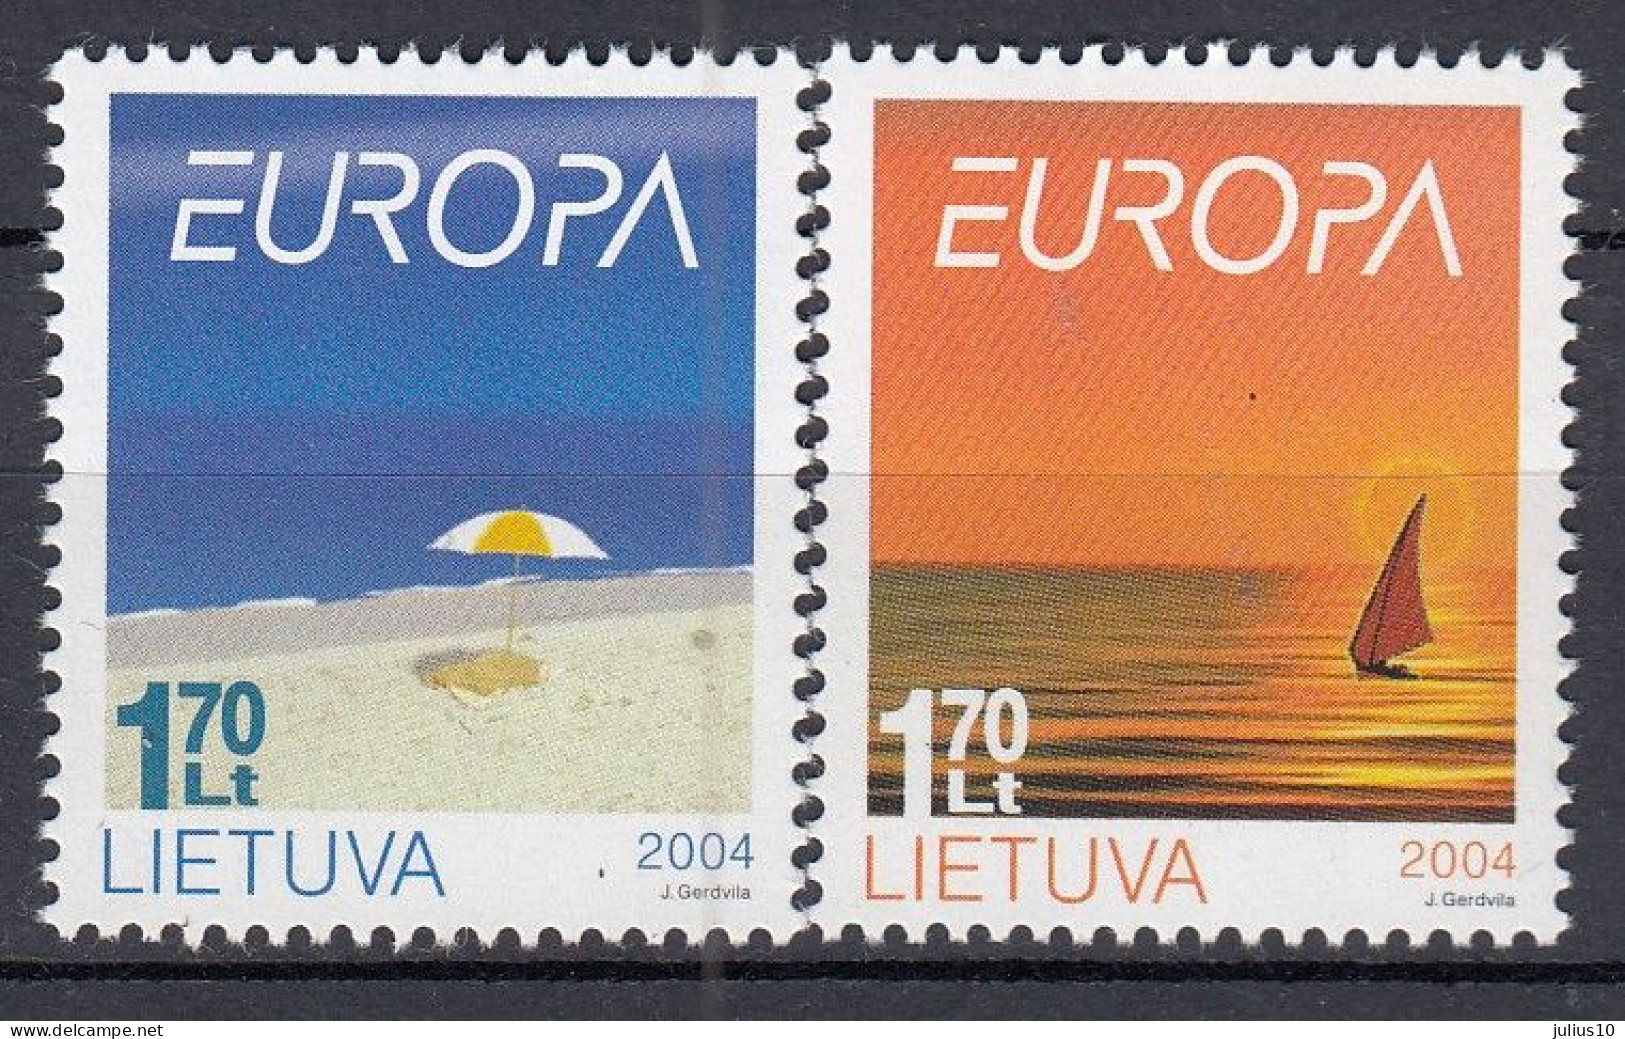 LITHUANIA 2004 Europa Holiday MNH(**) Mi 842-843 #Lt1004 - Lituanie